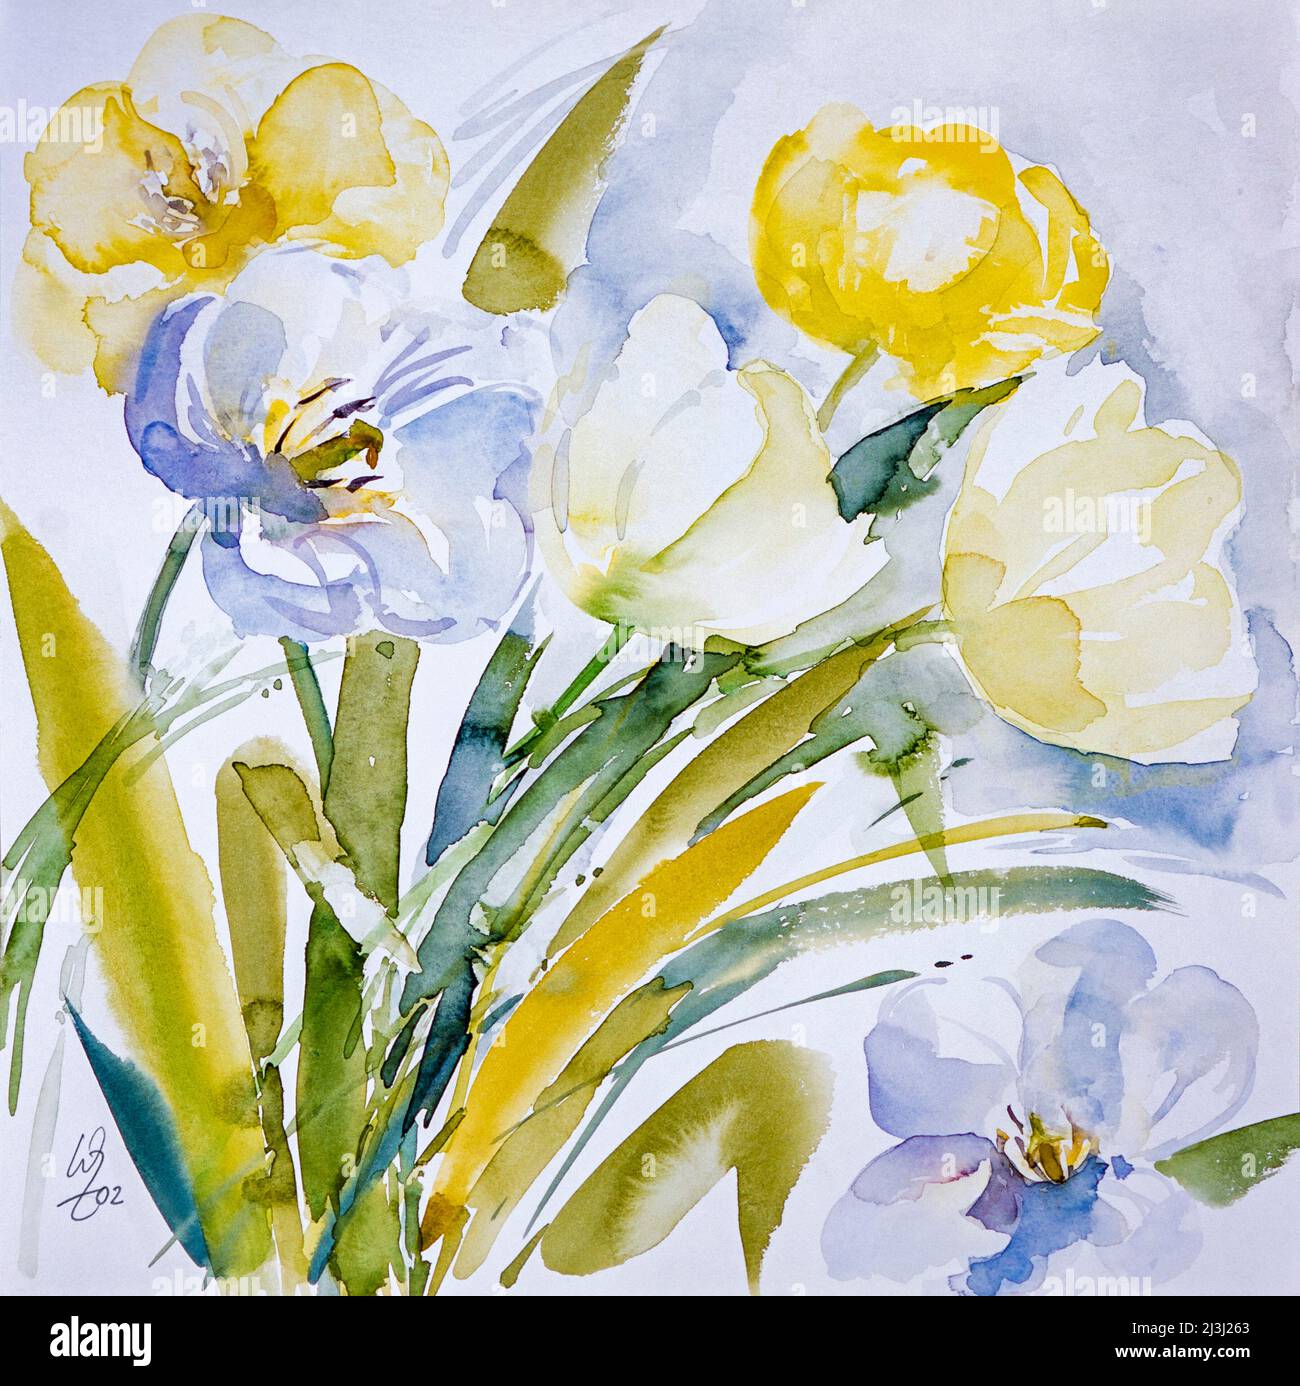 Aquarell von Waltraud Zizelmann, Blumenstrauß aus Tulpen, weiße, gelbe und blaue Tulpen Stockfoto